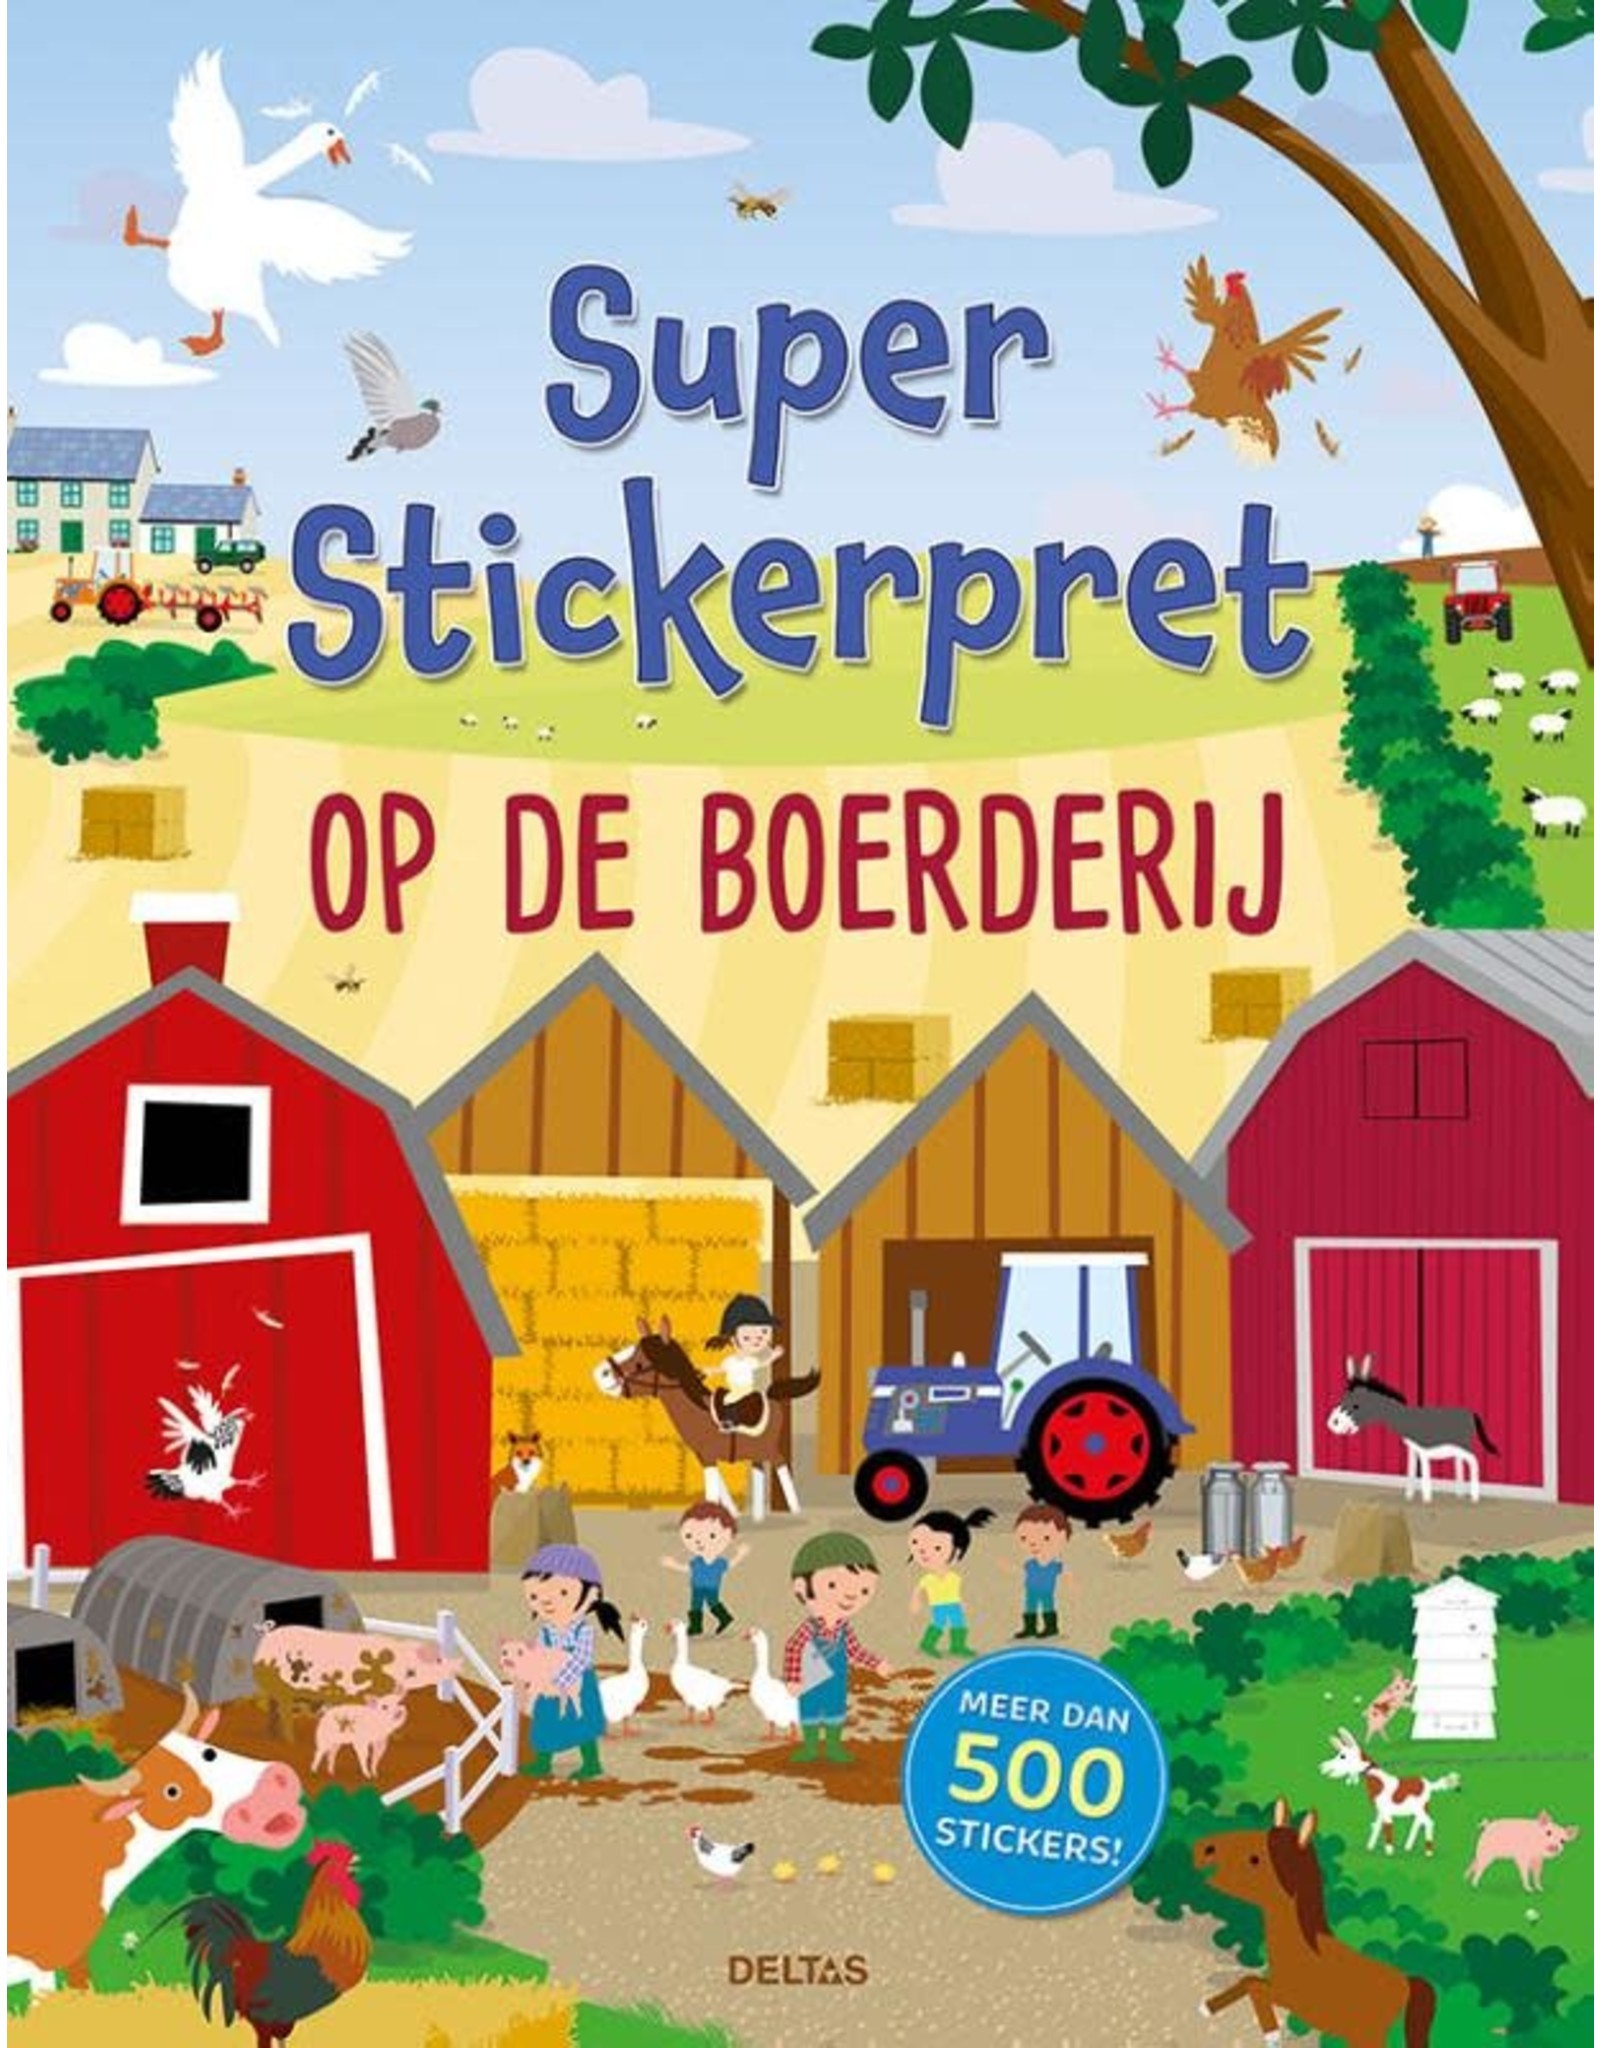 Deltas Super Stickerpret "Op de Boerderij"